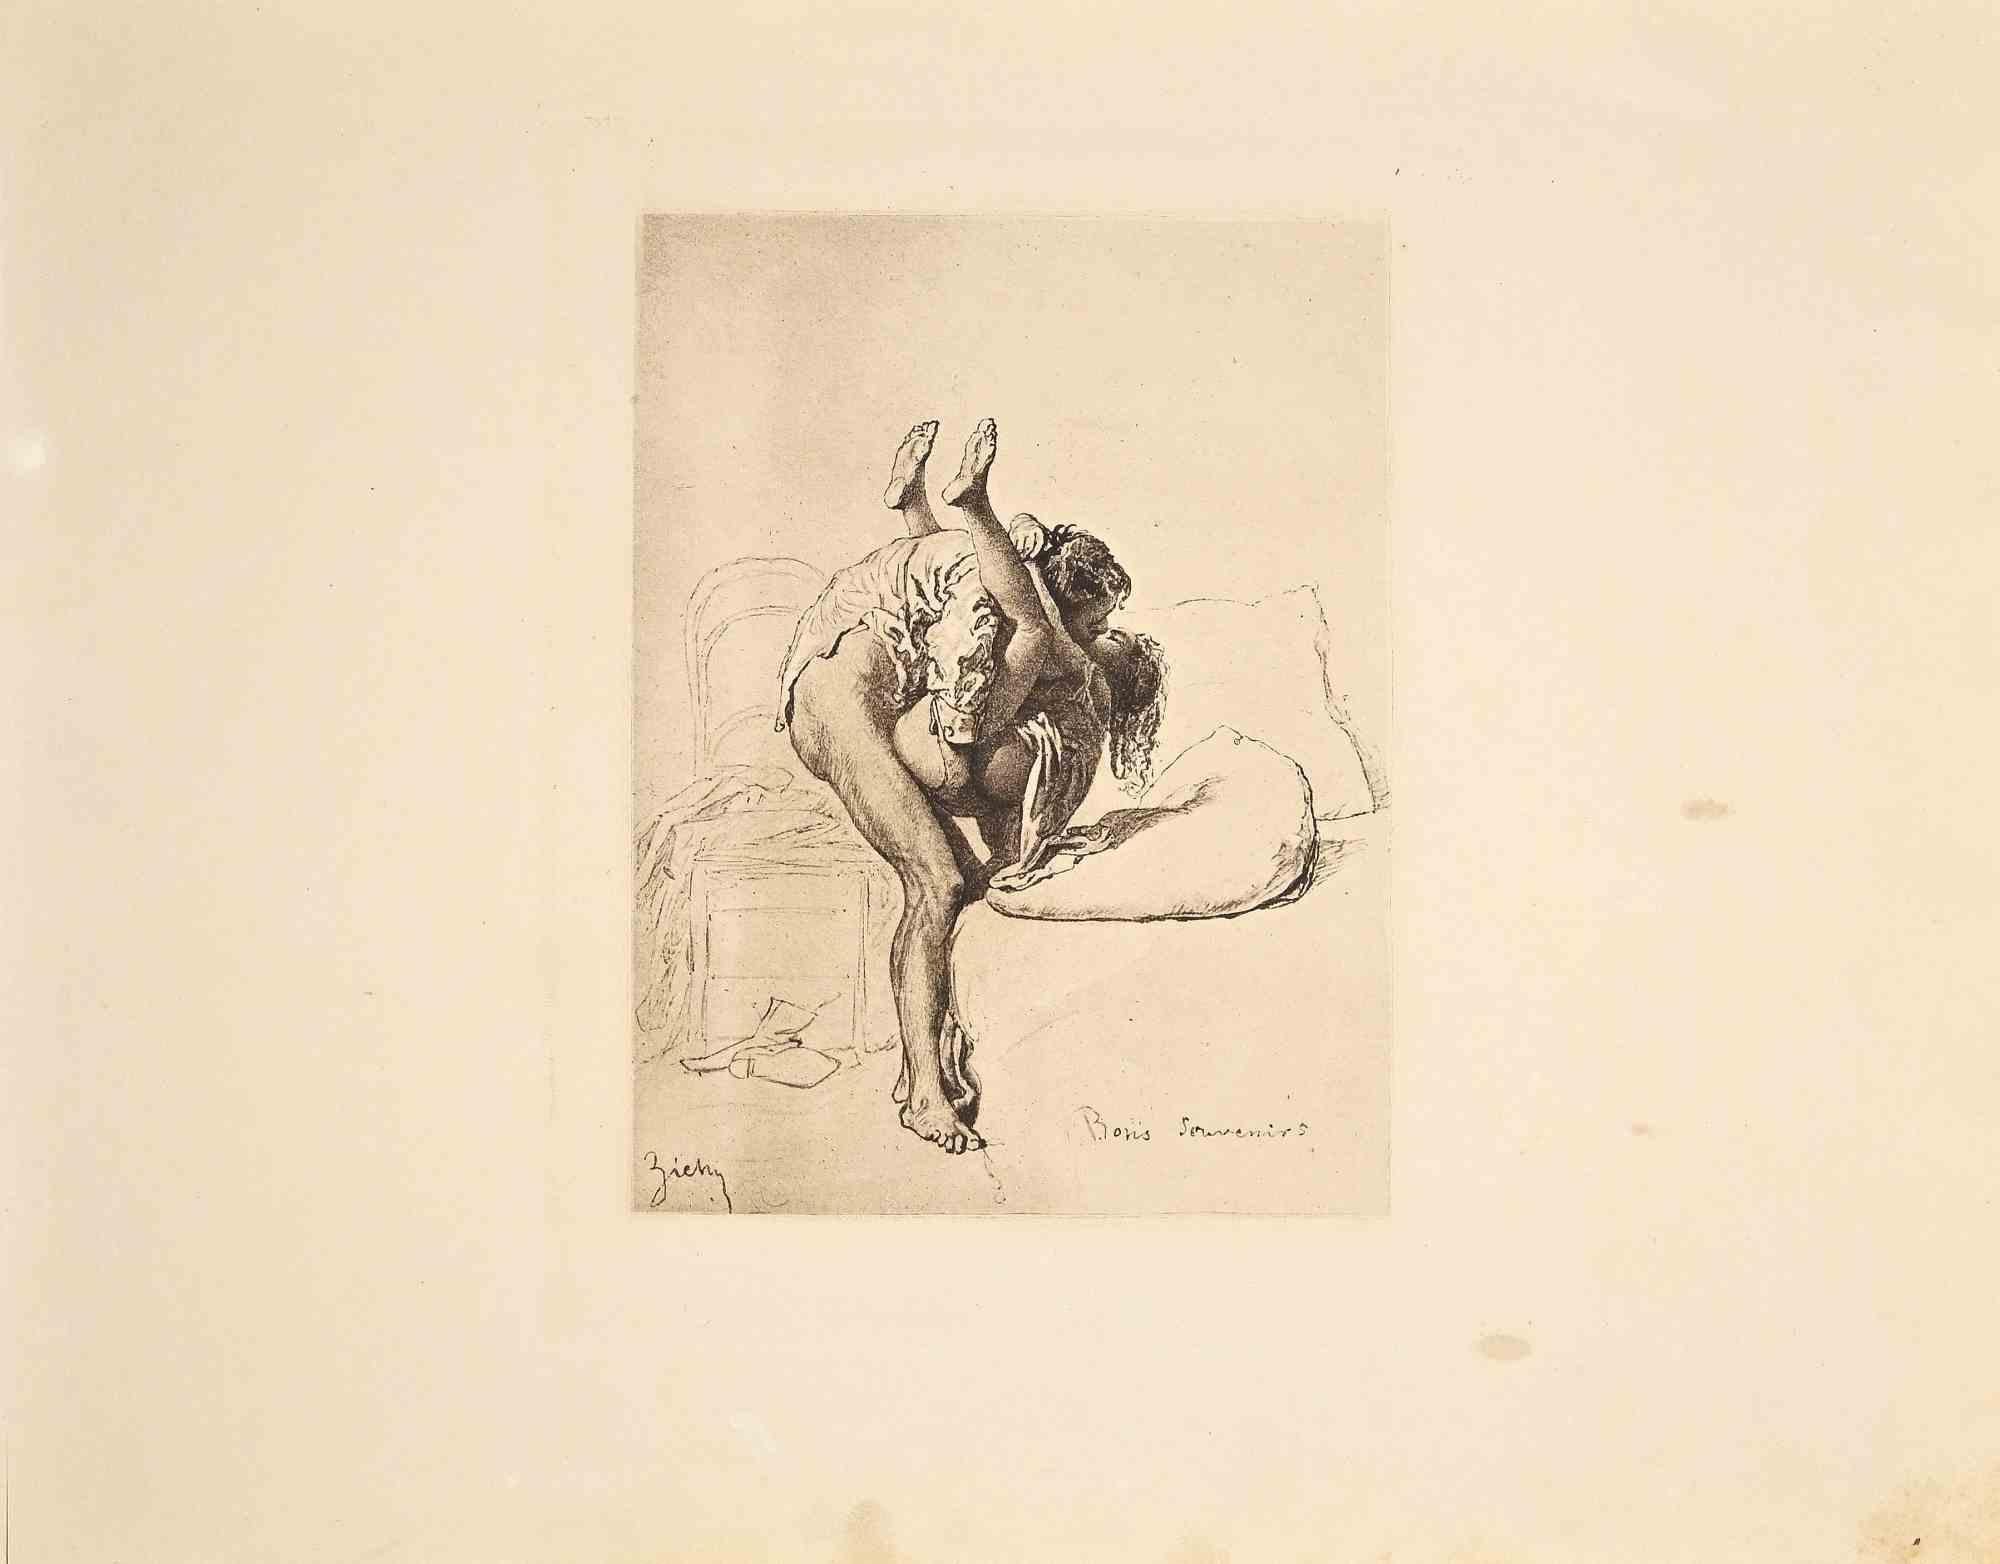 Die erotische Szene ist ein Original-Héliogravure-Kunstwerk auf elfenbeinfarbenem Papier, das 1911 von Michael von Zichy geschaffen wurde.  Gedruckt in nur 300 Exemplaren, Leipzig; Privatdruck, aus dem Katalog "Liebe", Text in Deutsch auf der